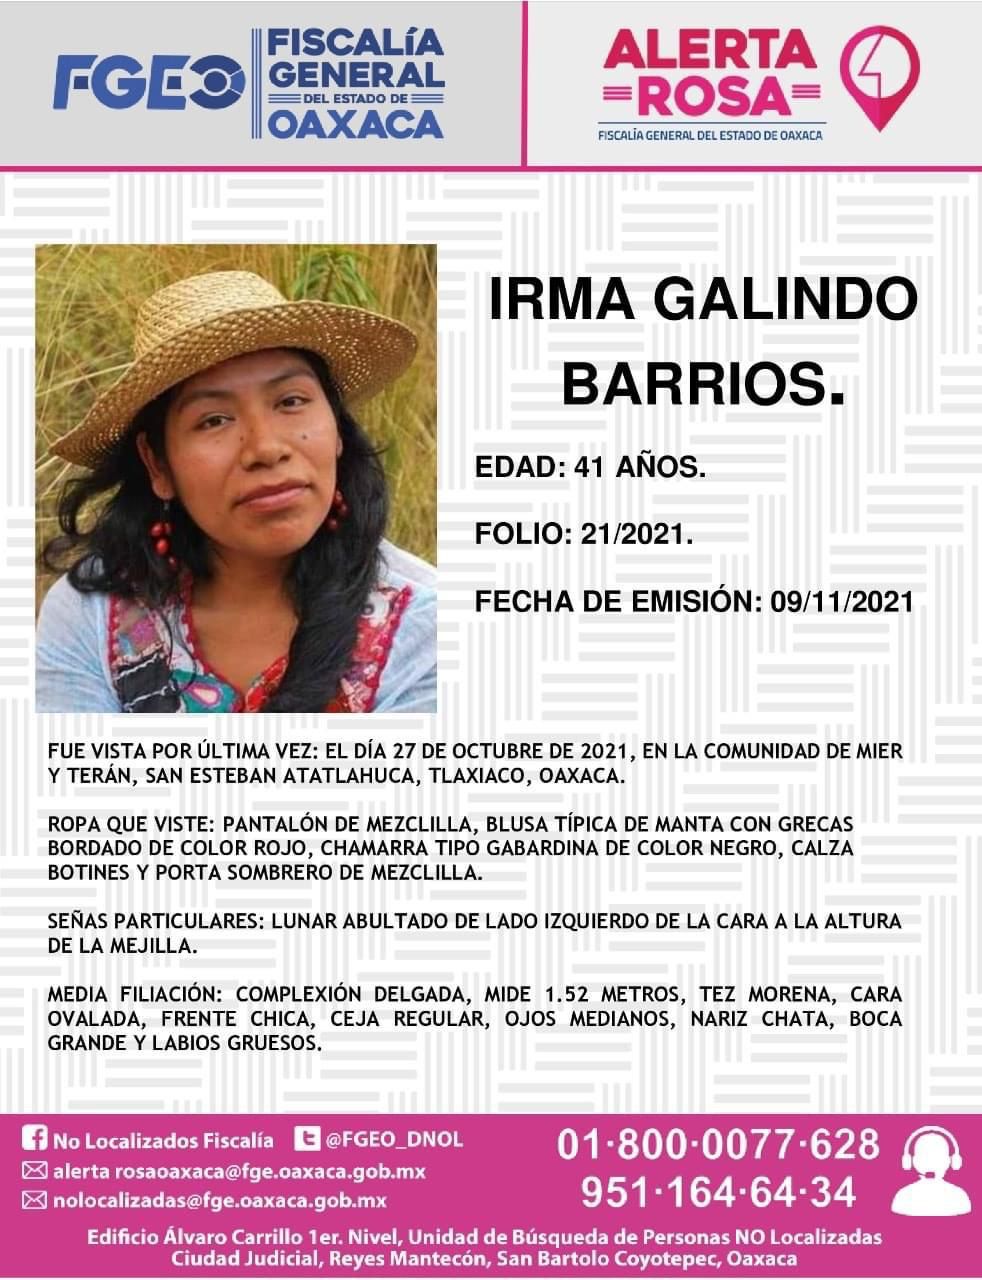 https://editorial.aristeguinoticias.com/wp-content/uploads/2021/11/irma-galindo-barrios-oaxaca-desaparicion-2.jpg